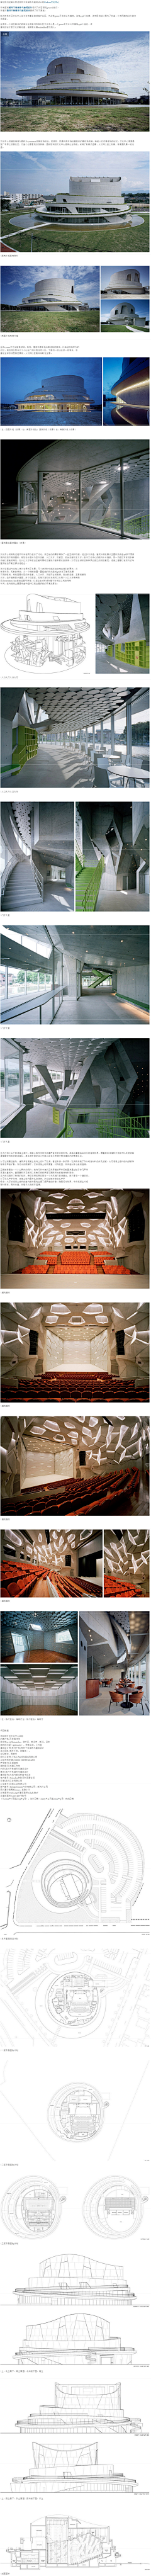 榆城古風采集到会展中心  文化中心设计